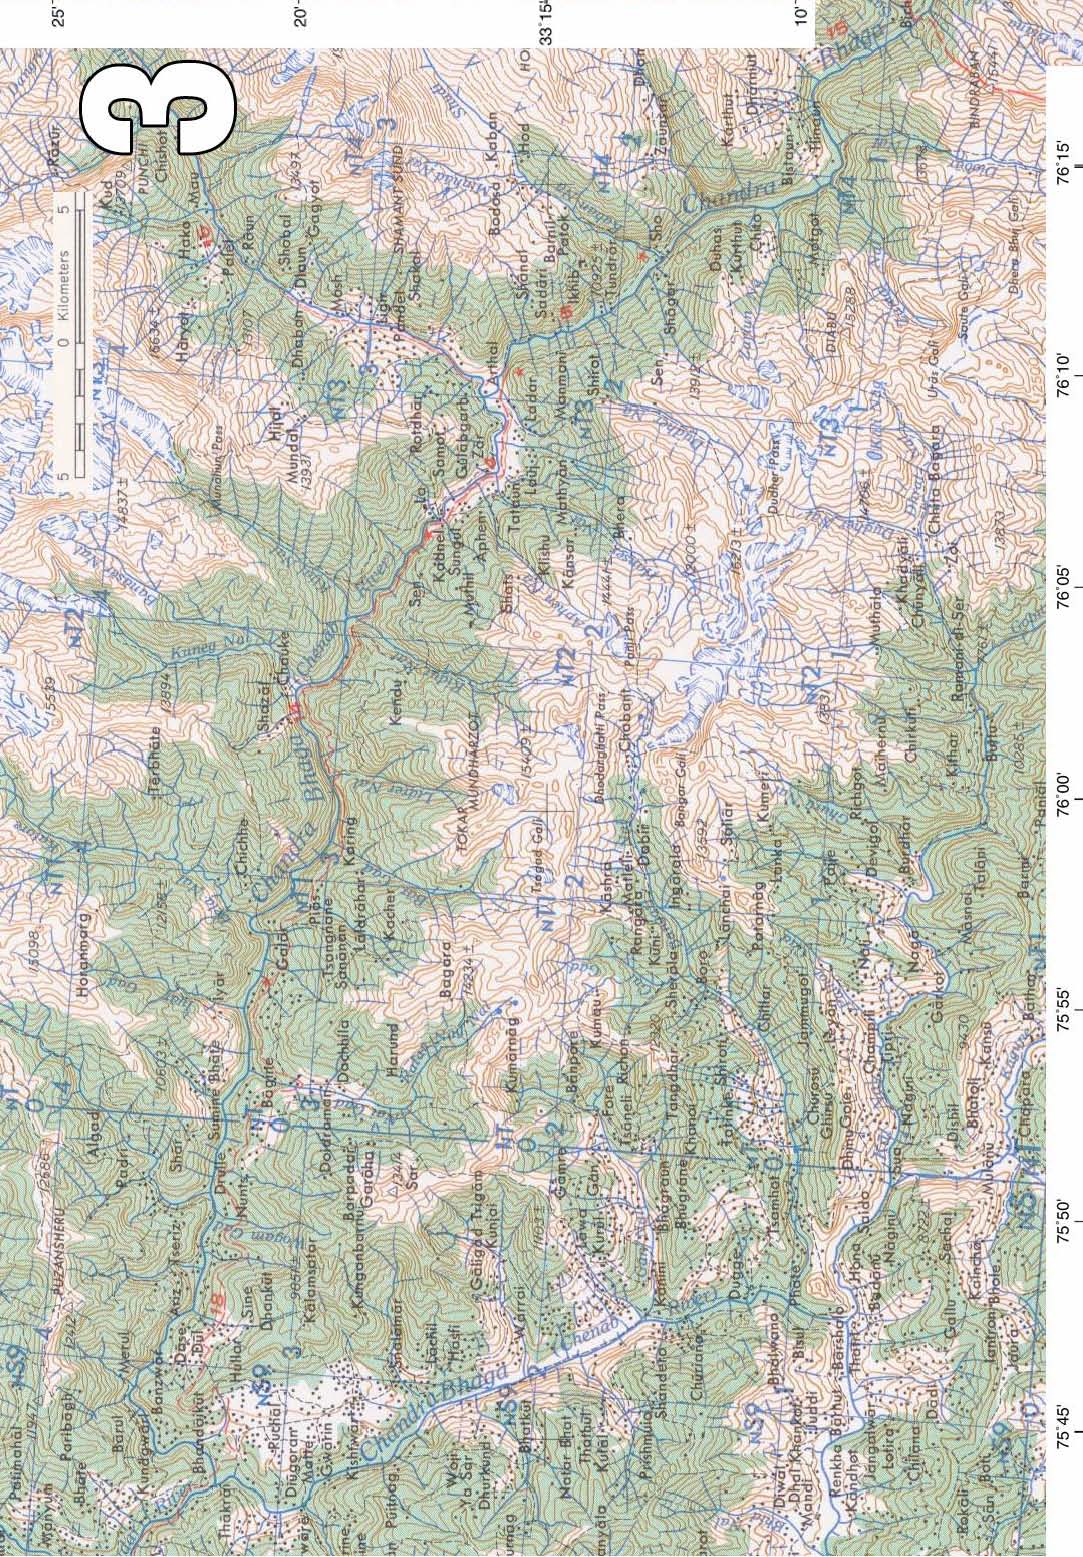 Приложение №4 Американская топографическая карта района реки Ченаб, Индия